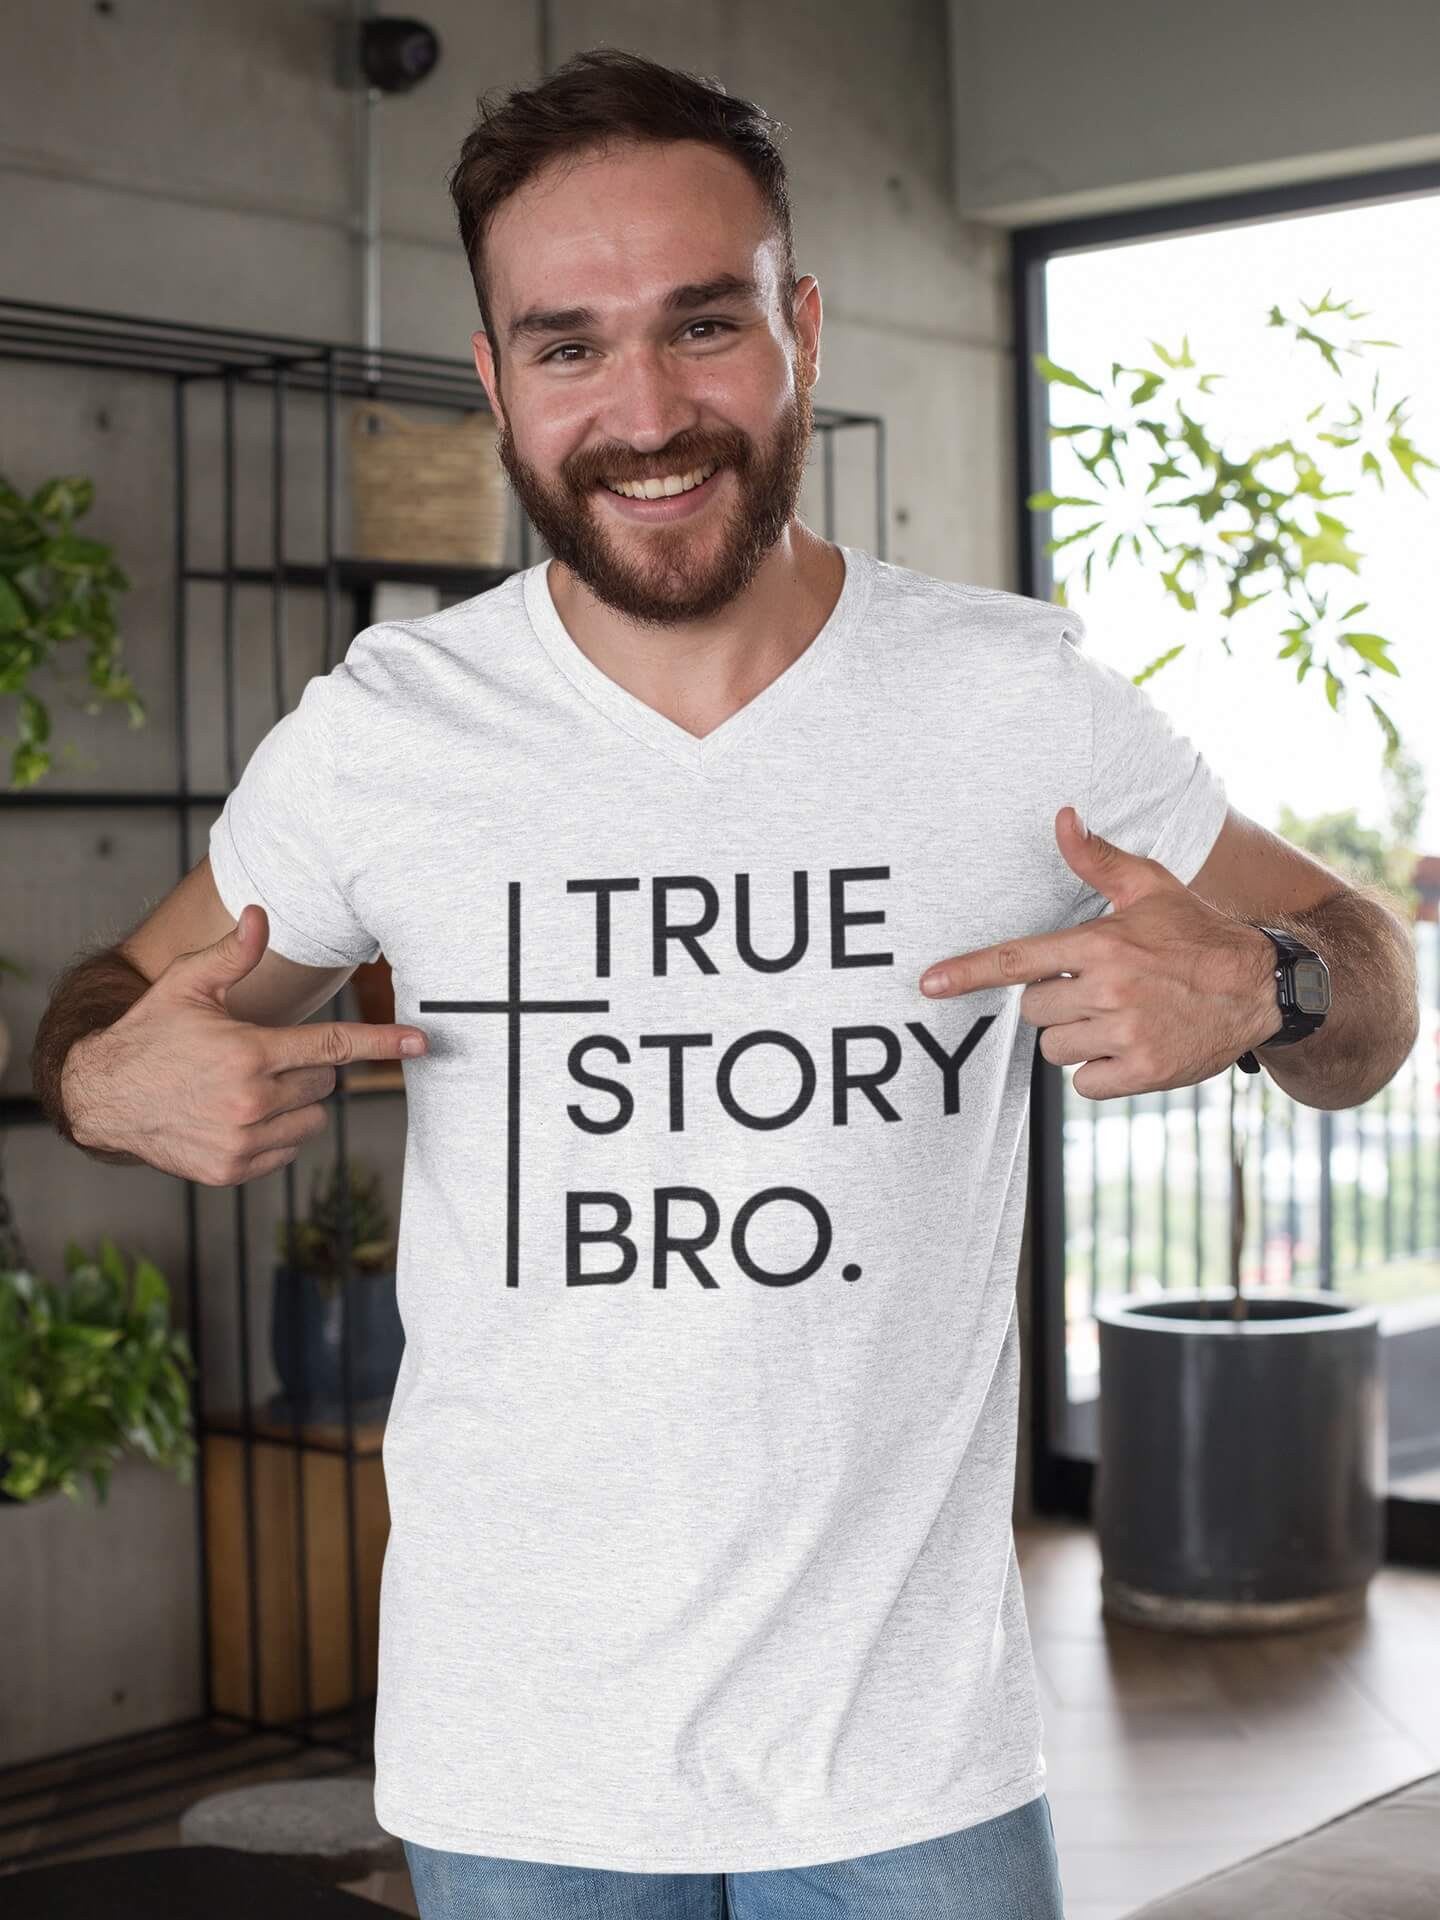 Das Klassische Herren Jesus T-Shirt mit dem Spruch - True Story Bro "Wahre Geschichte Bruder" von Jesus Shirts